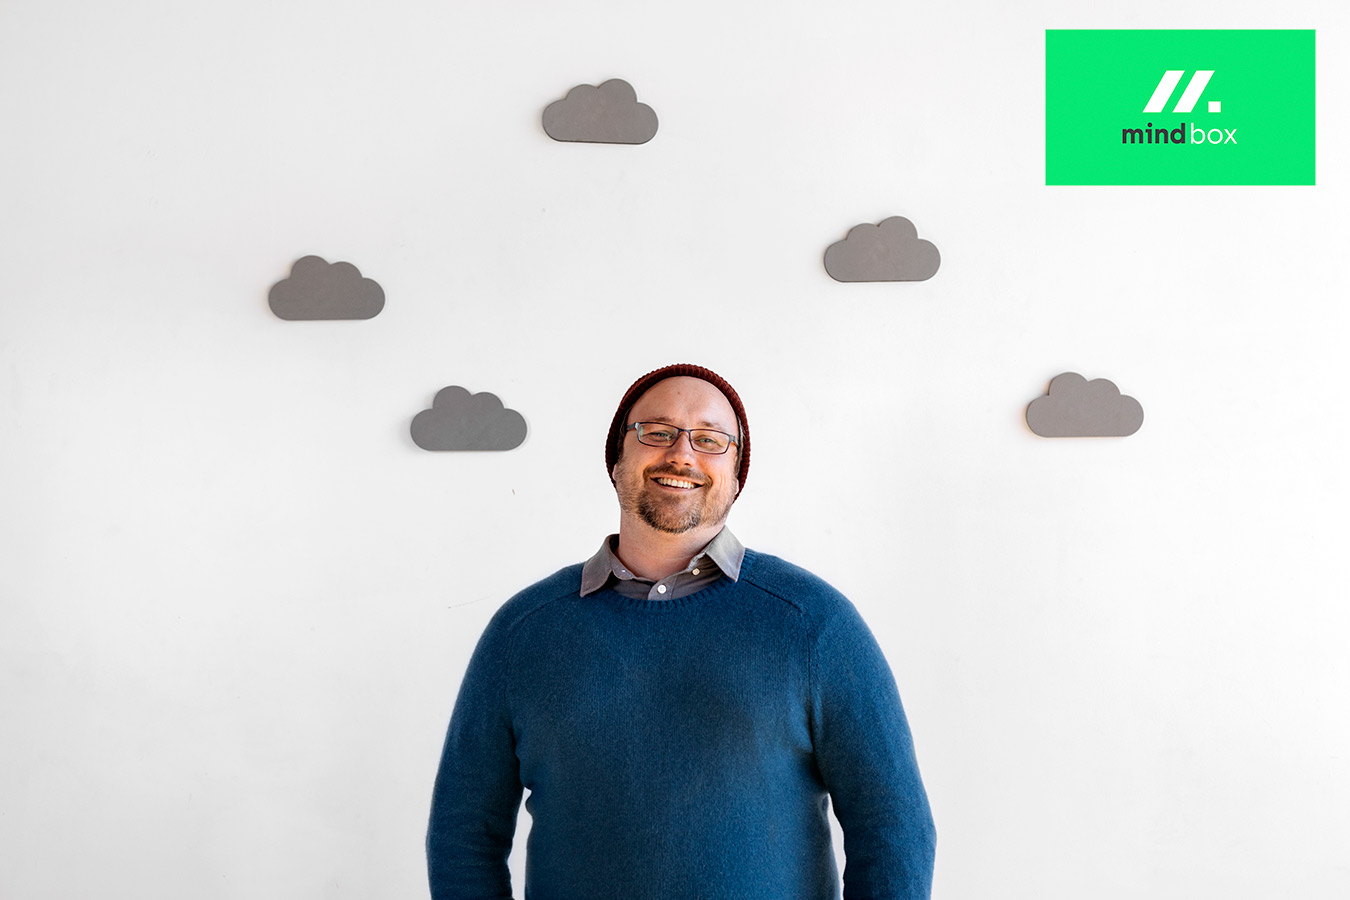 cloud native pomagamy firmom takim jak twoja odniesc sukces w erze chmur